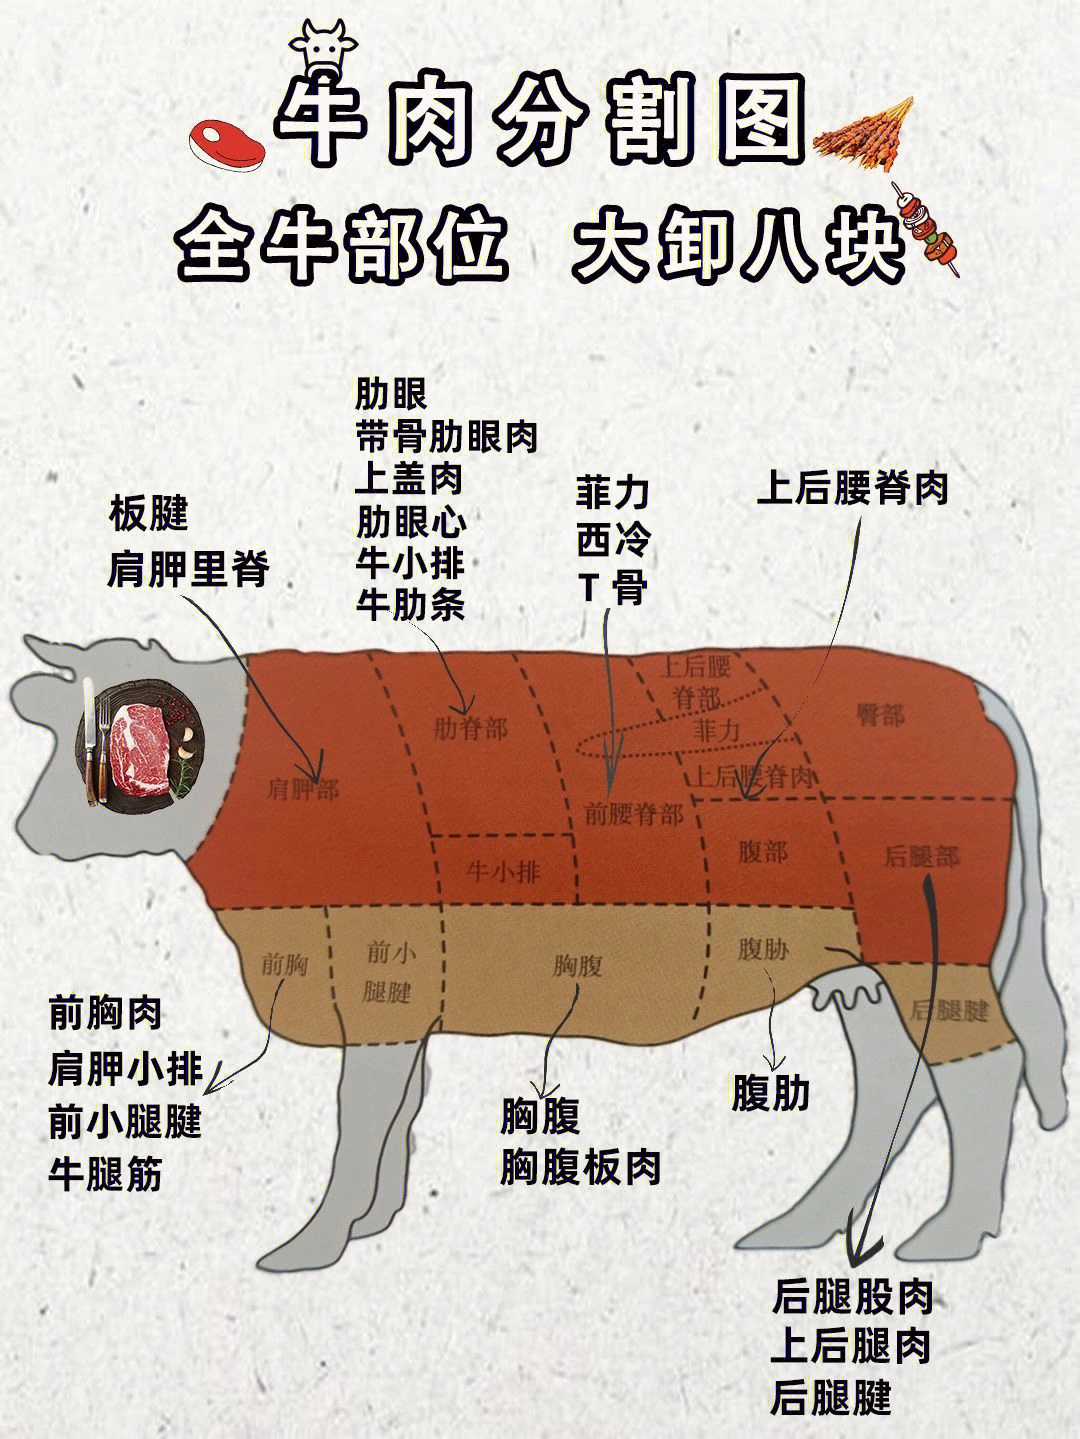 牛身体部位分布图图片